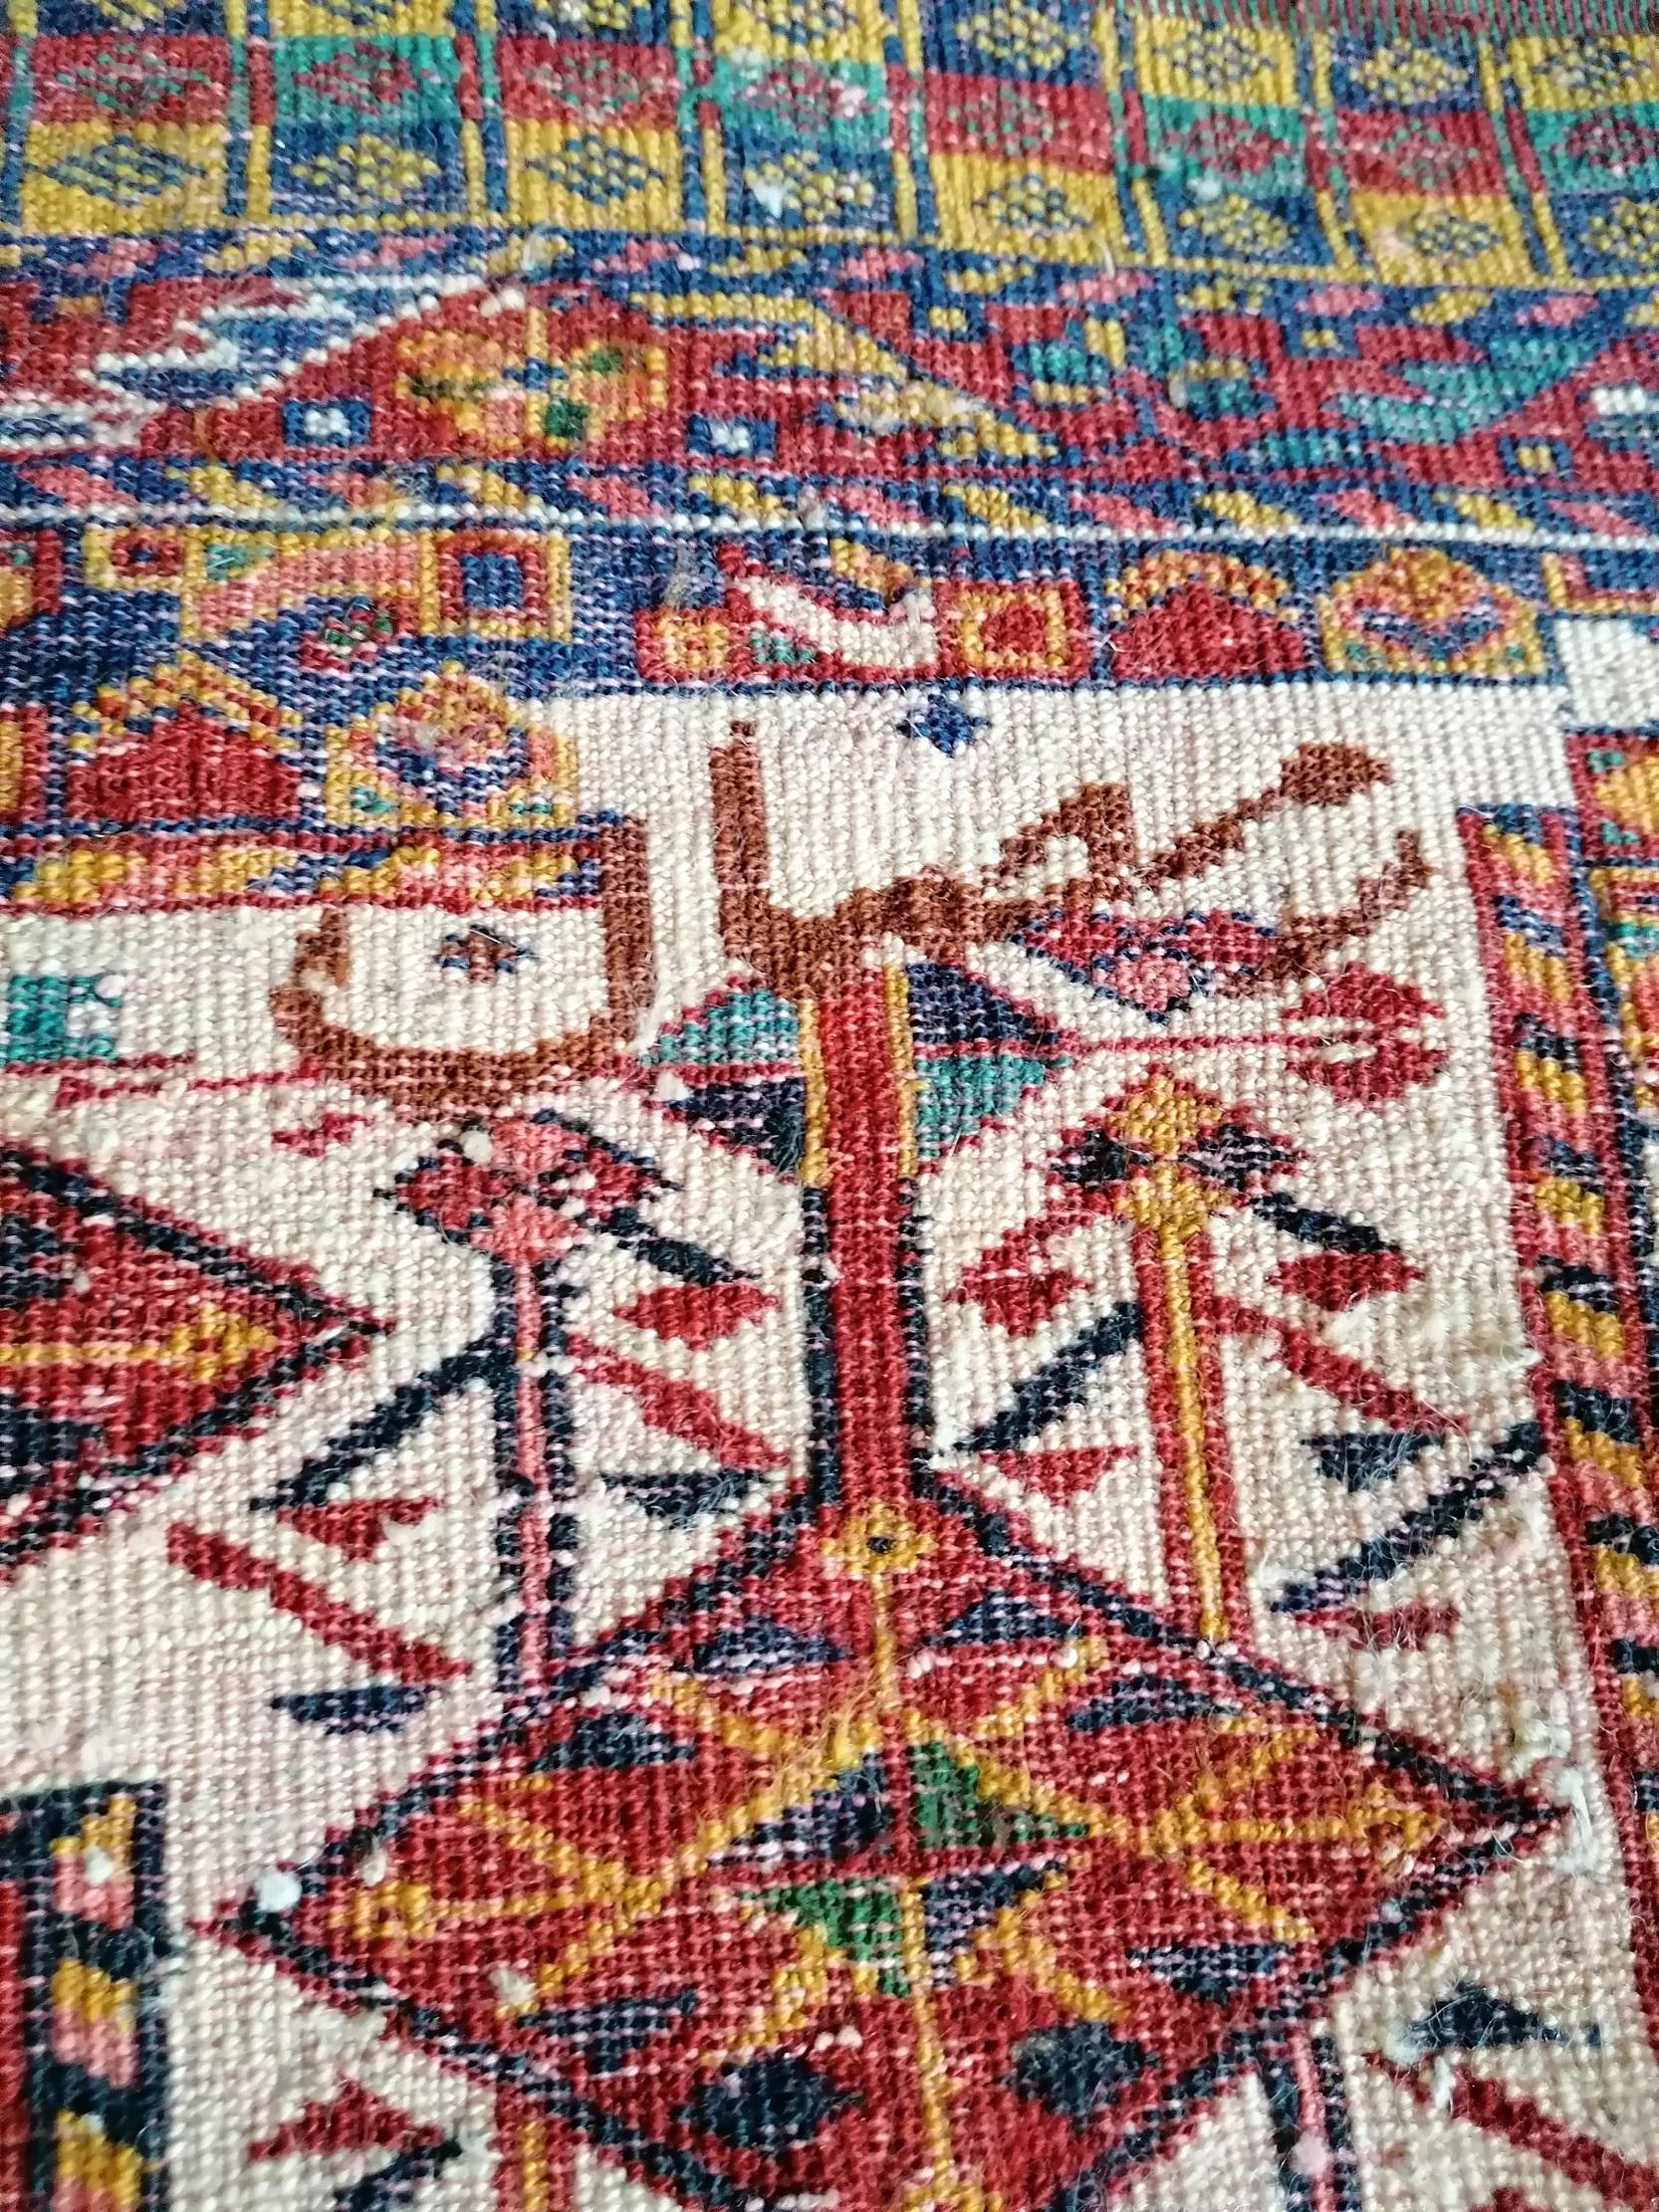 1069 - Goutchan Carpet For Sale 1